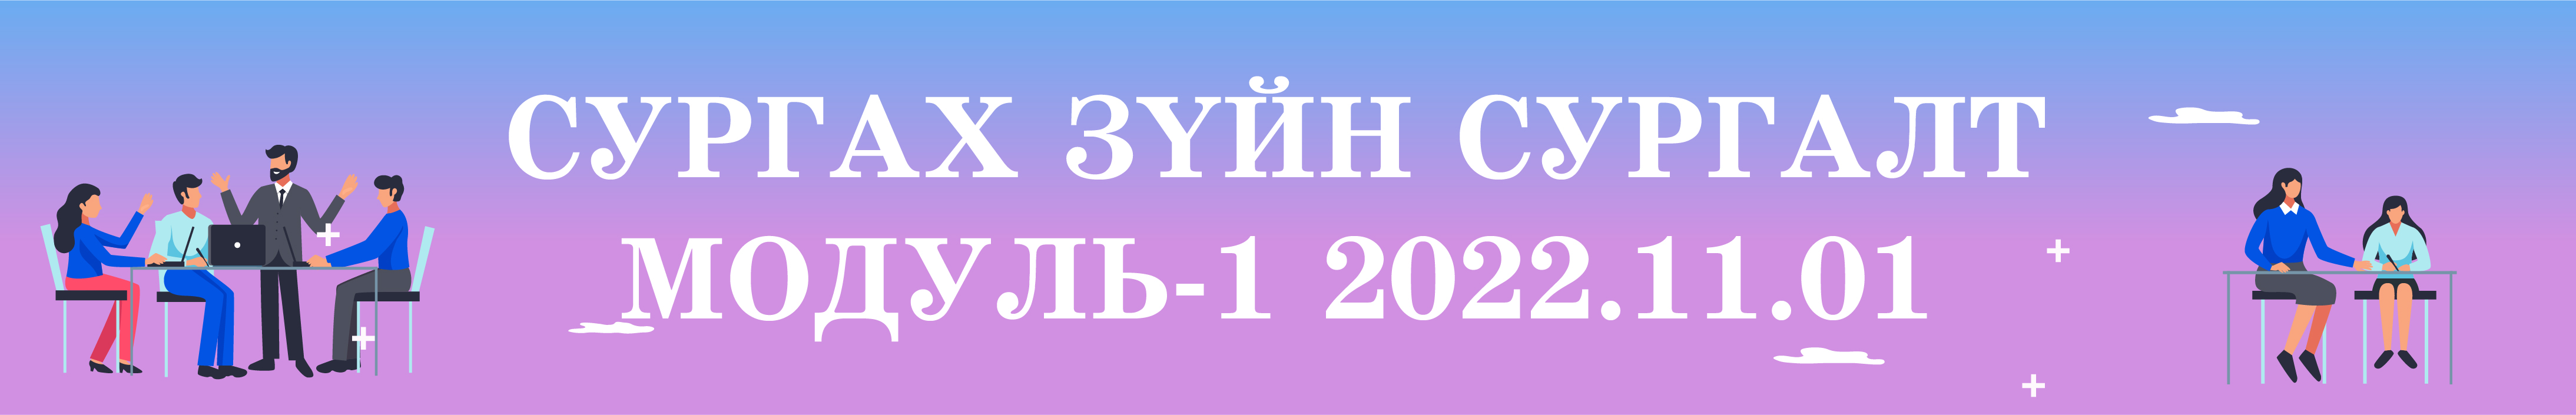 Сургах зүйн сургалт Модуль-1 2022.11.01